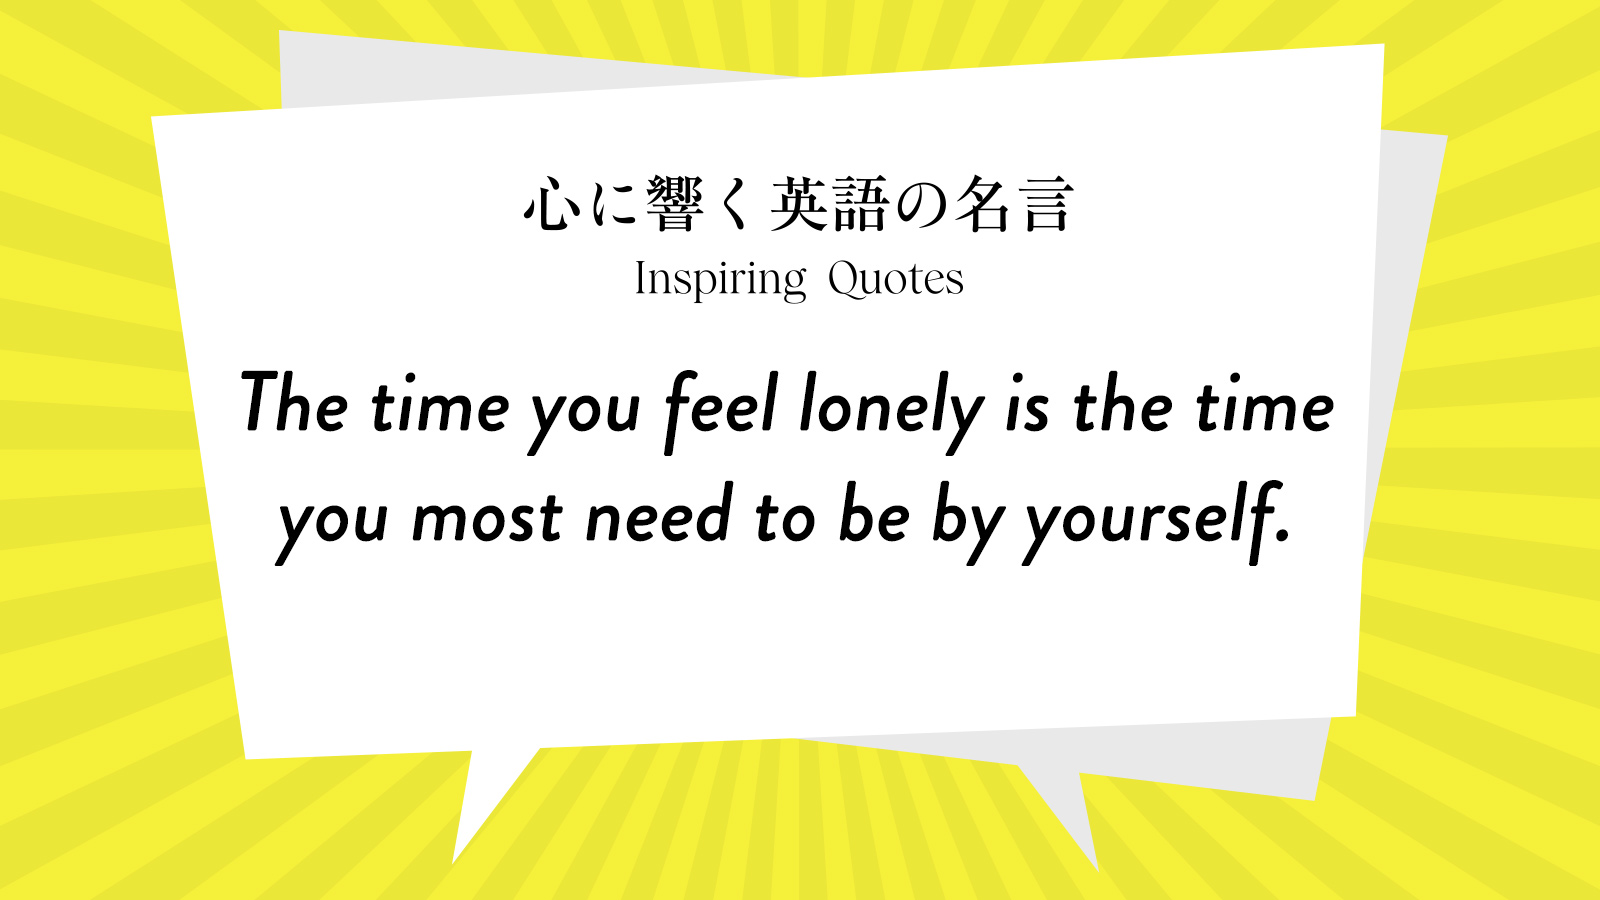 今週の名言 “The time you feel lonely is the time you most need to be by yourself.” | Inspiring Quotes: 心に響く英語の名言